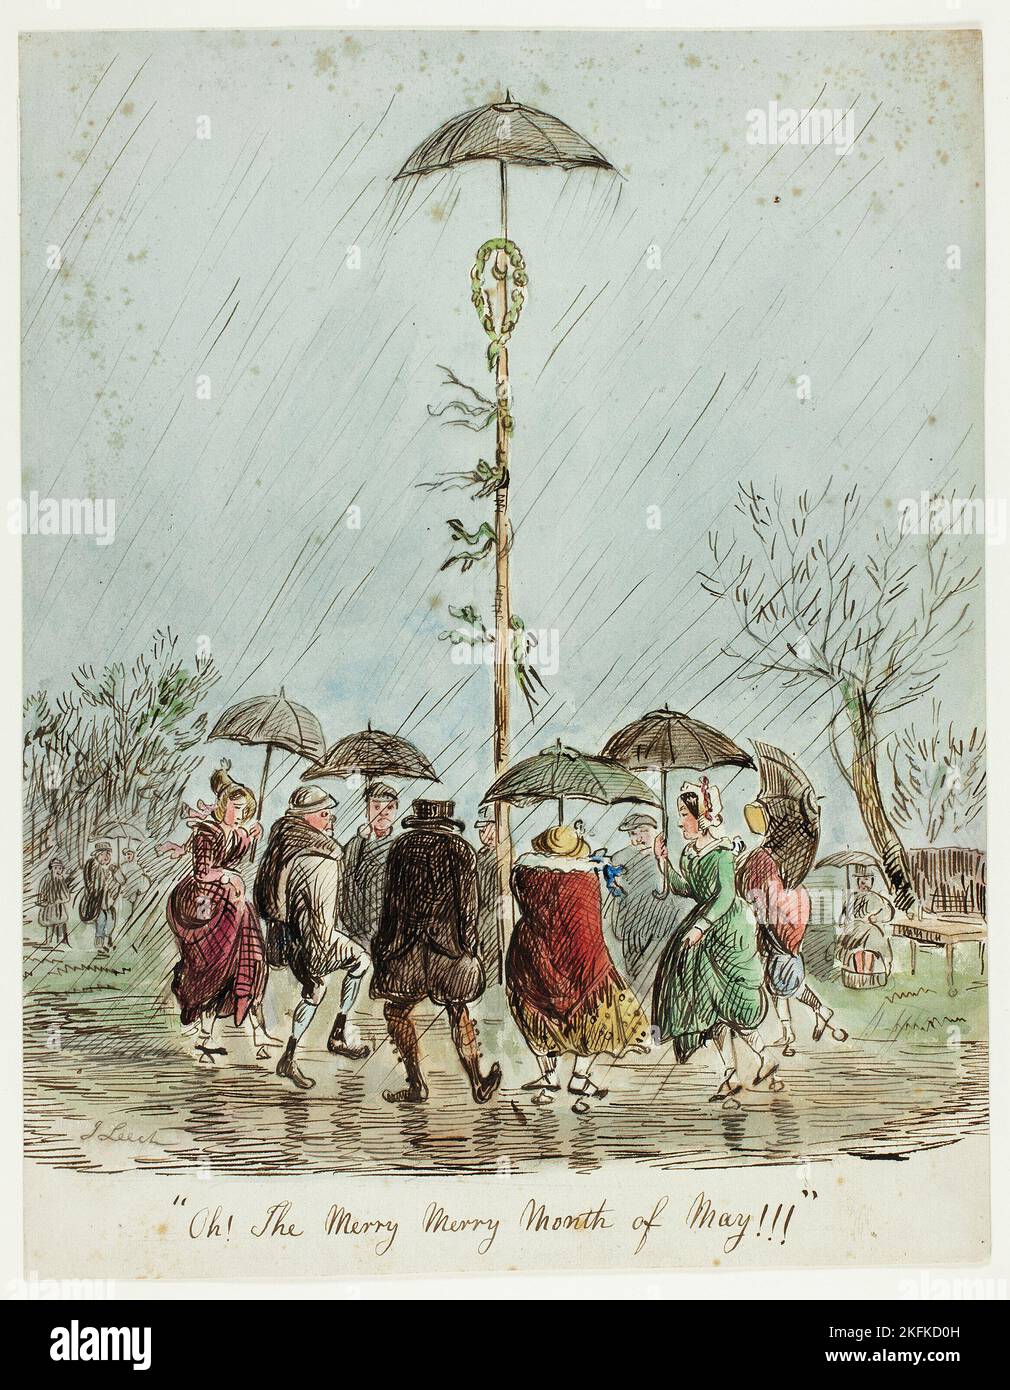 Oh! Der fröhliche, fröhliche Monat Mai!!!, 1850/59. Traditioneller englischer Brauch: Menschen, die im Regen um den Maibaum tanzen. Von oder möglicherweise nach John Leech. Stockfoto